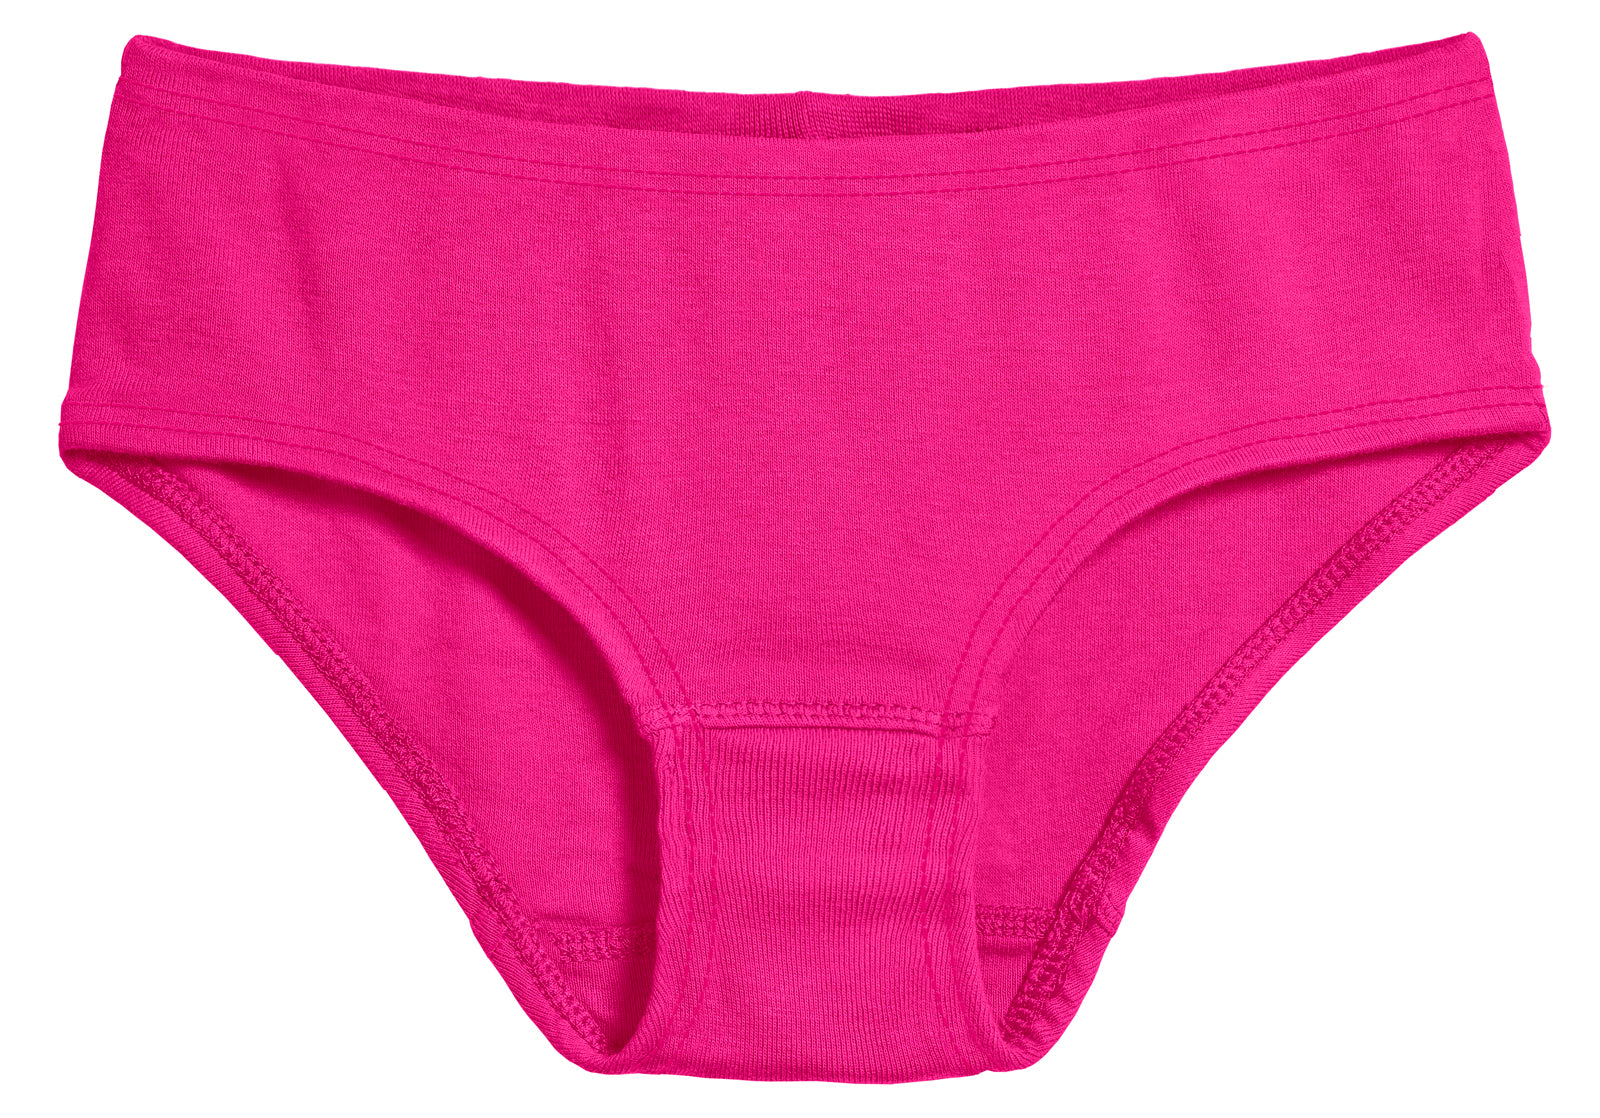 Ketyyh-chn99 Girls Underwear Girls' Soft Brief Underwear Pink,140 